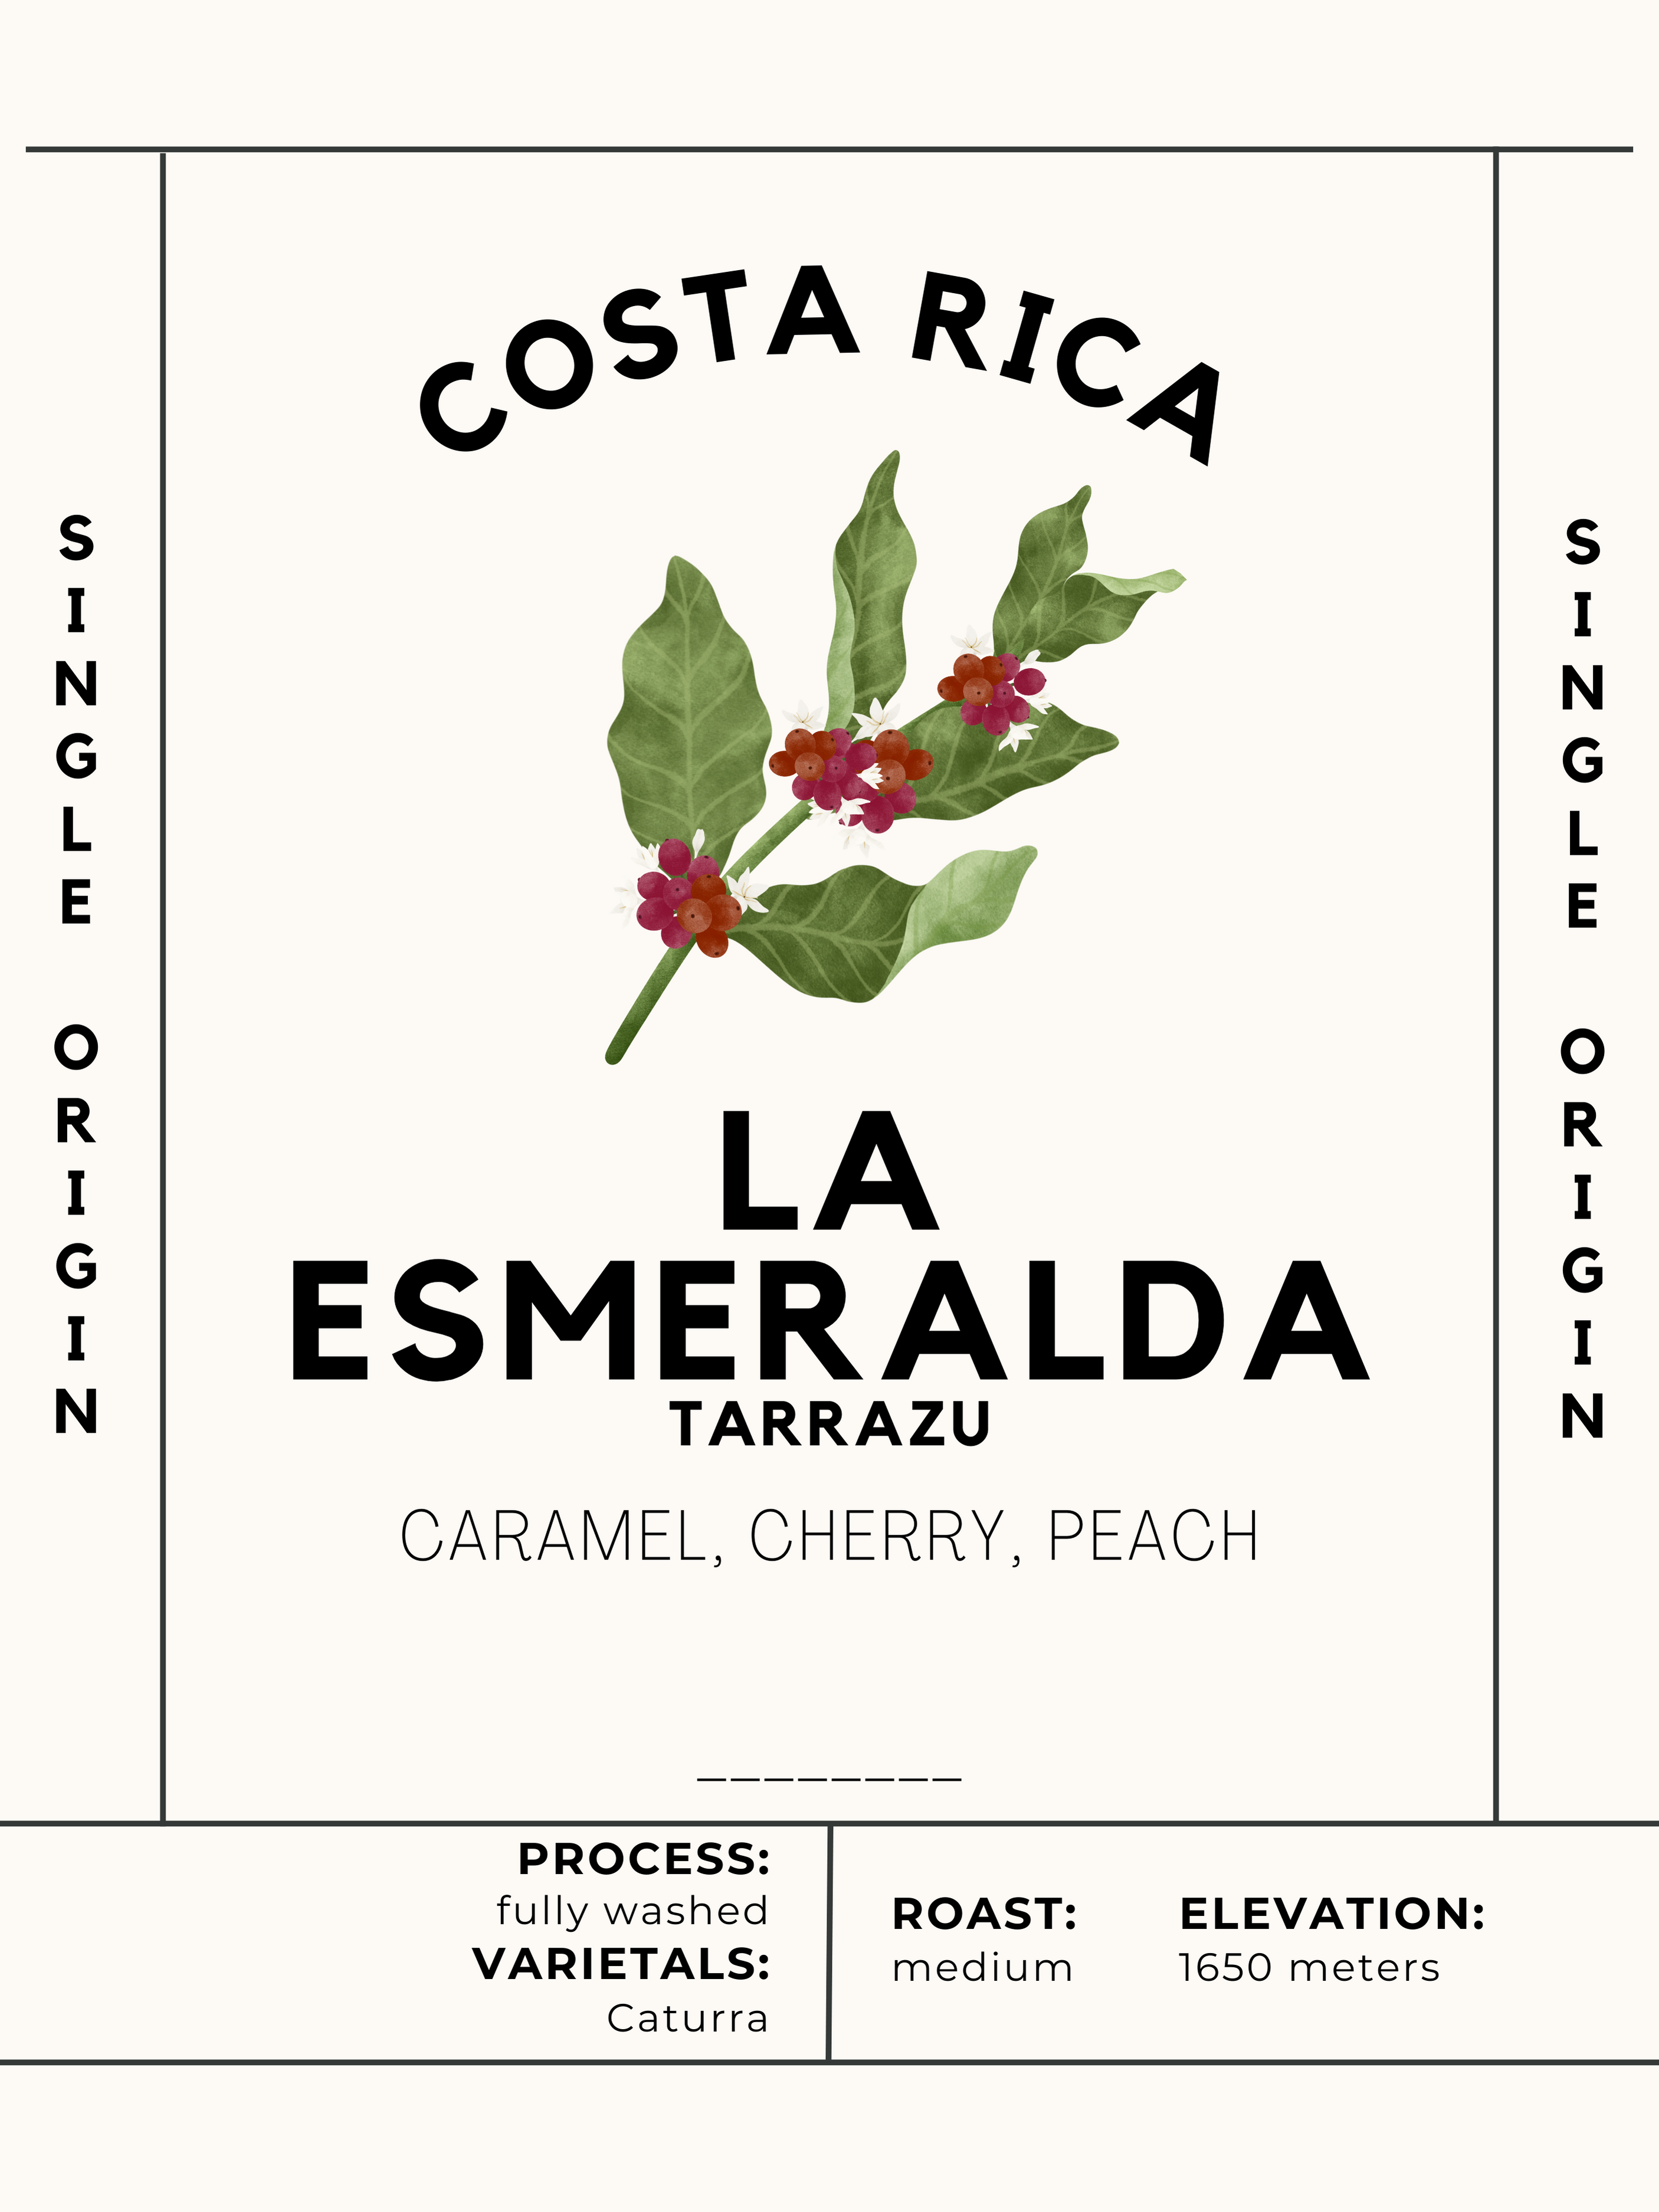 Costa Rica Tarrazu - La Esmeralda Senor Jimenez - Jaho Coffee Roaster